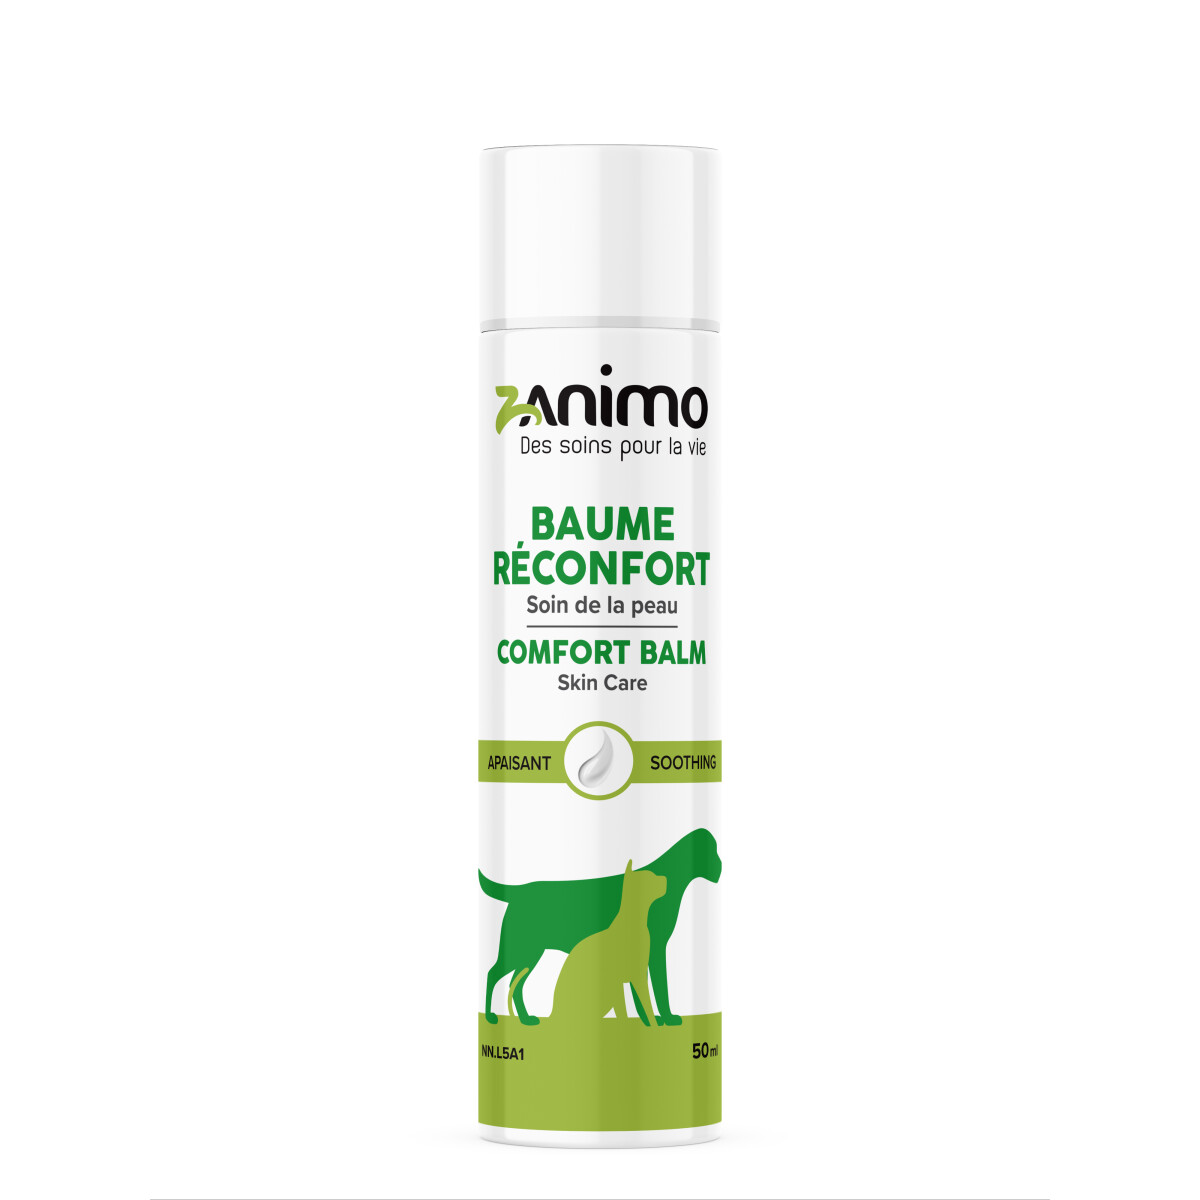 Z00404 - Baume réconfort soin de la peau pour animaux - Zanimo